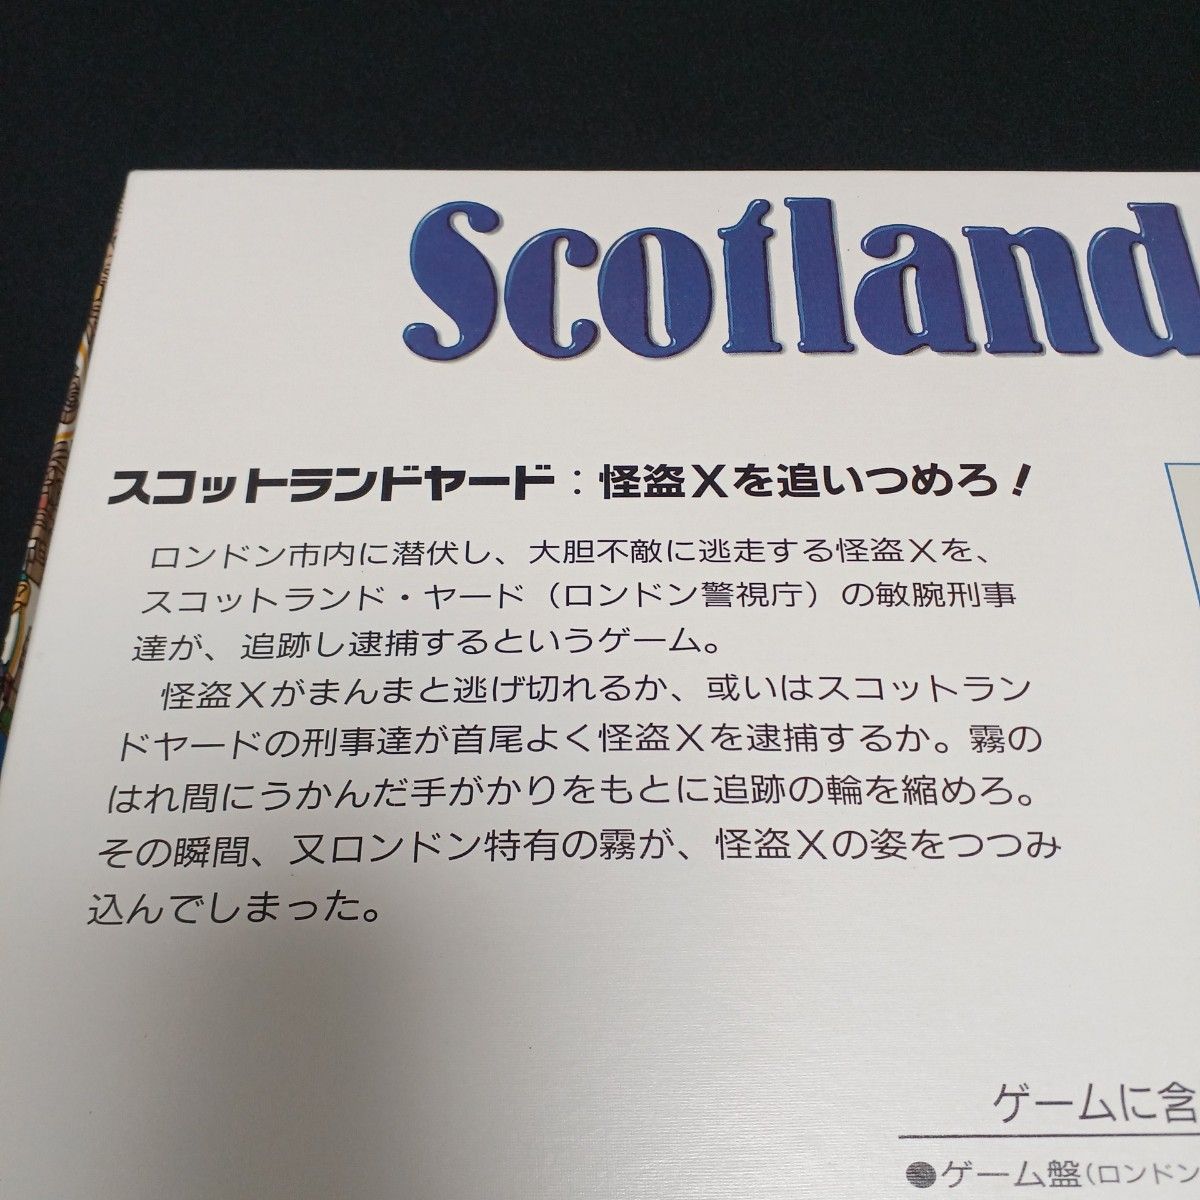 【美品】Scotland Yard スコットランドヤード ボードゲーム　西ドイツ製